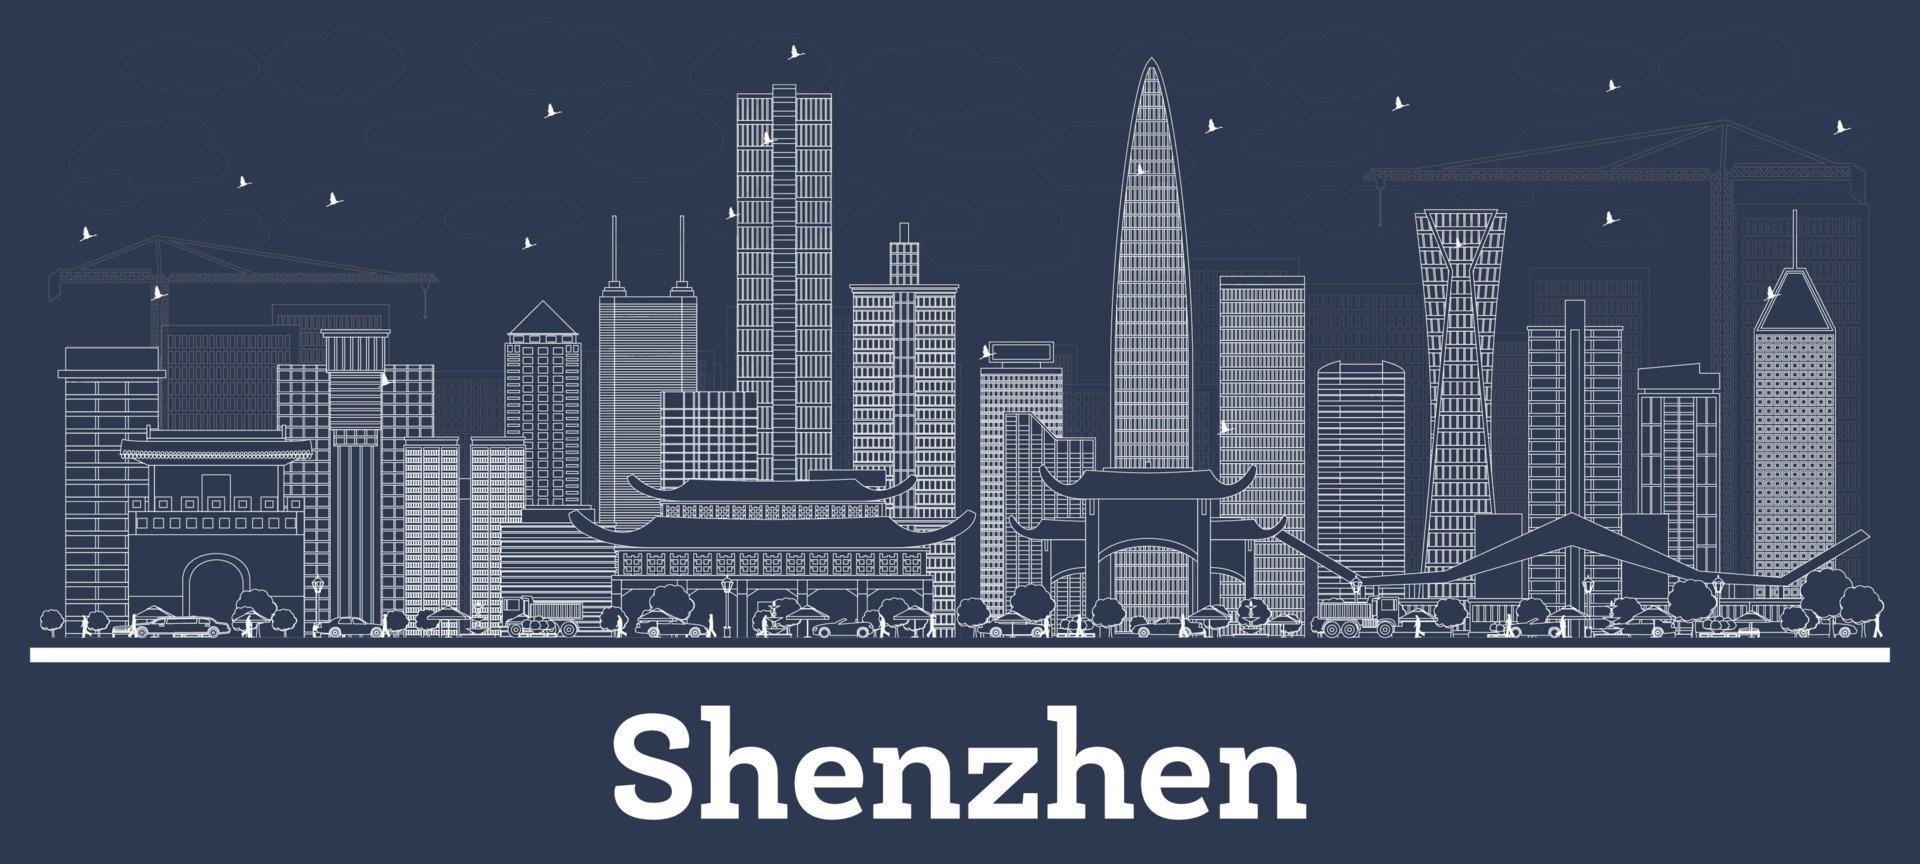 delinear el horizonte de la ciudad de shenzhen china con edificios blancos. vector